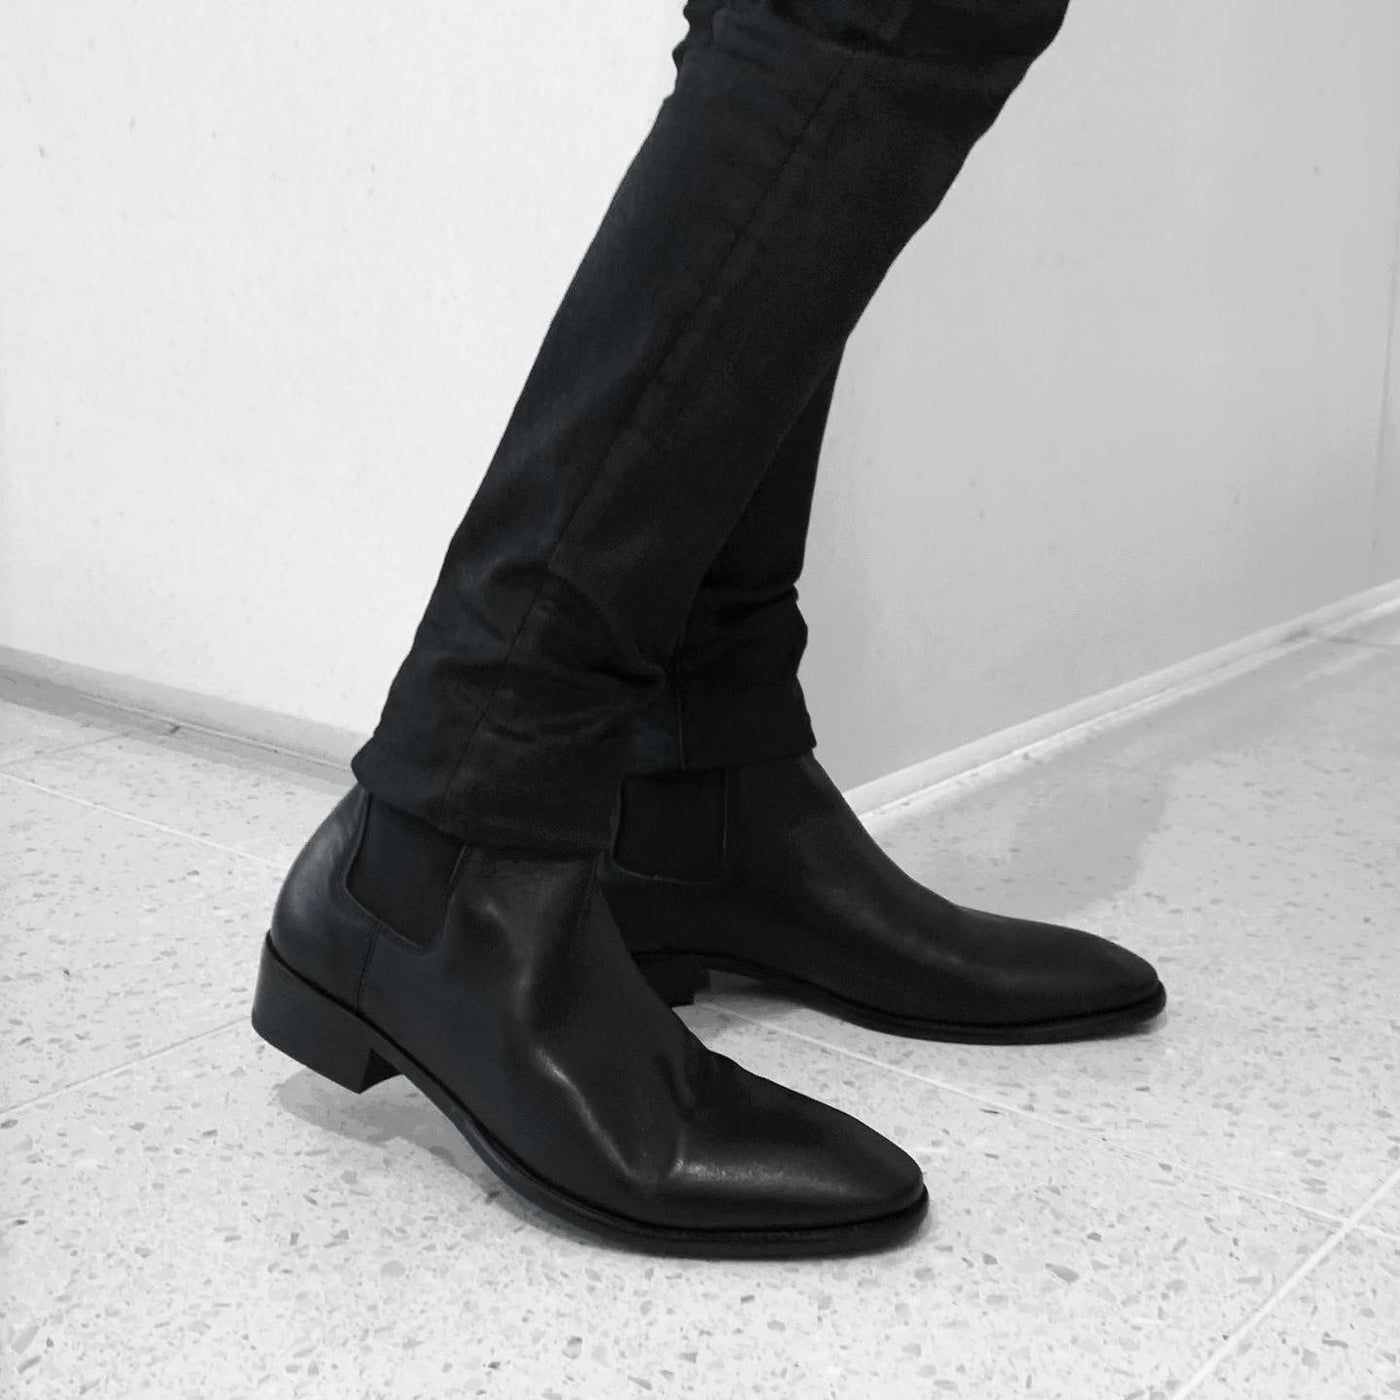 "leather side gore boots"leather side gore boots